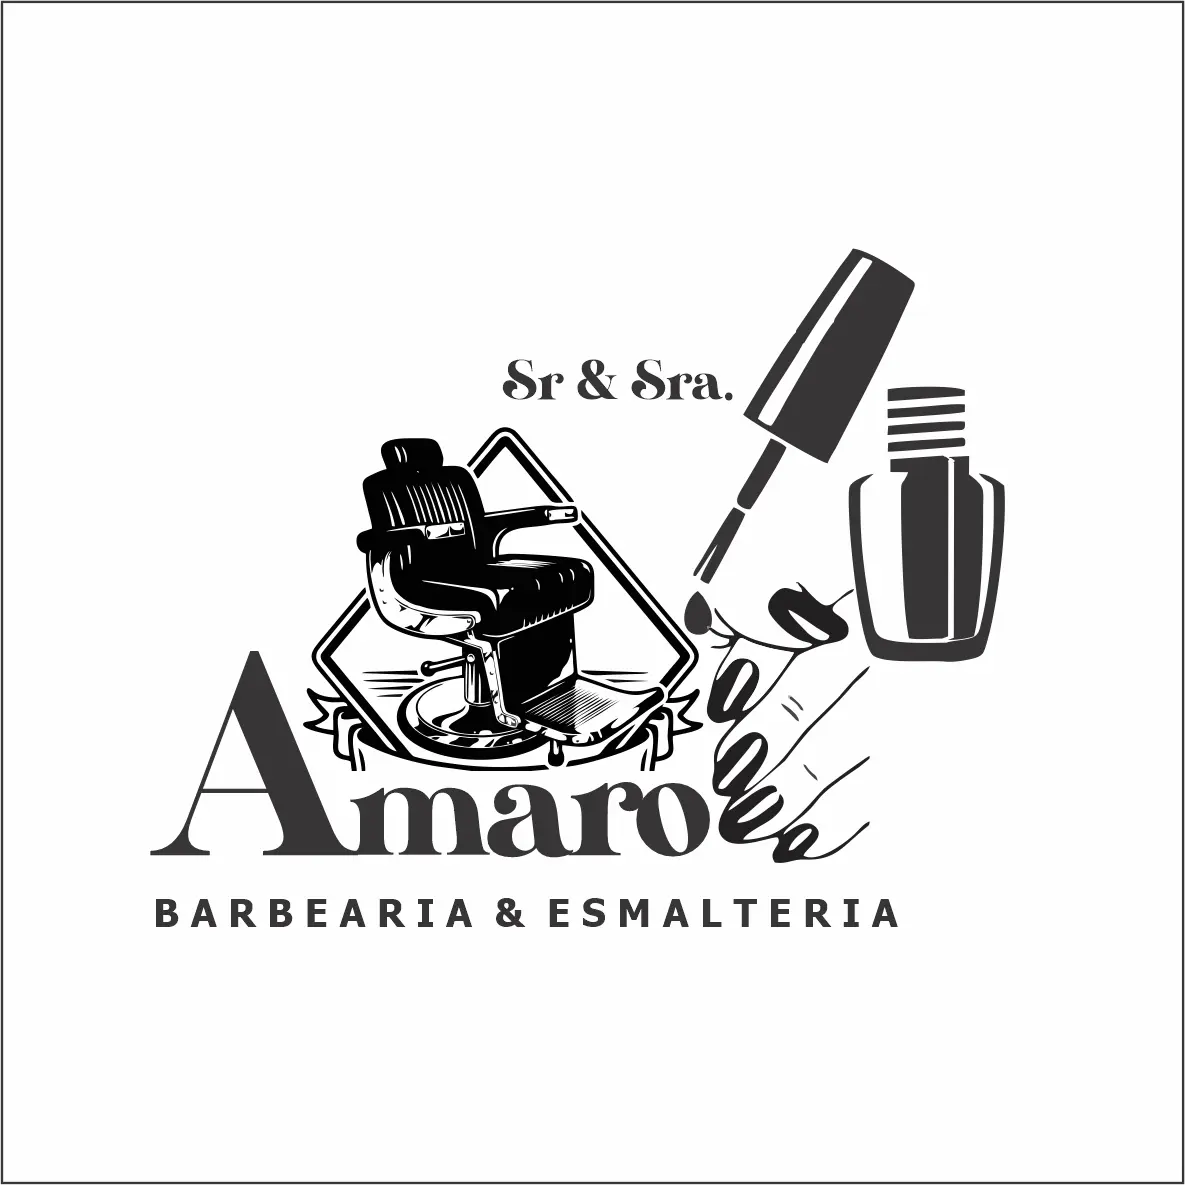 
Logotipo Logomarca para Barbearia e Esmalteria



